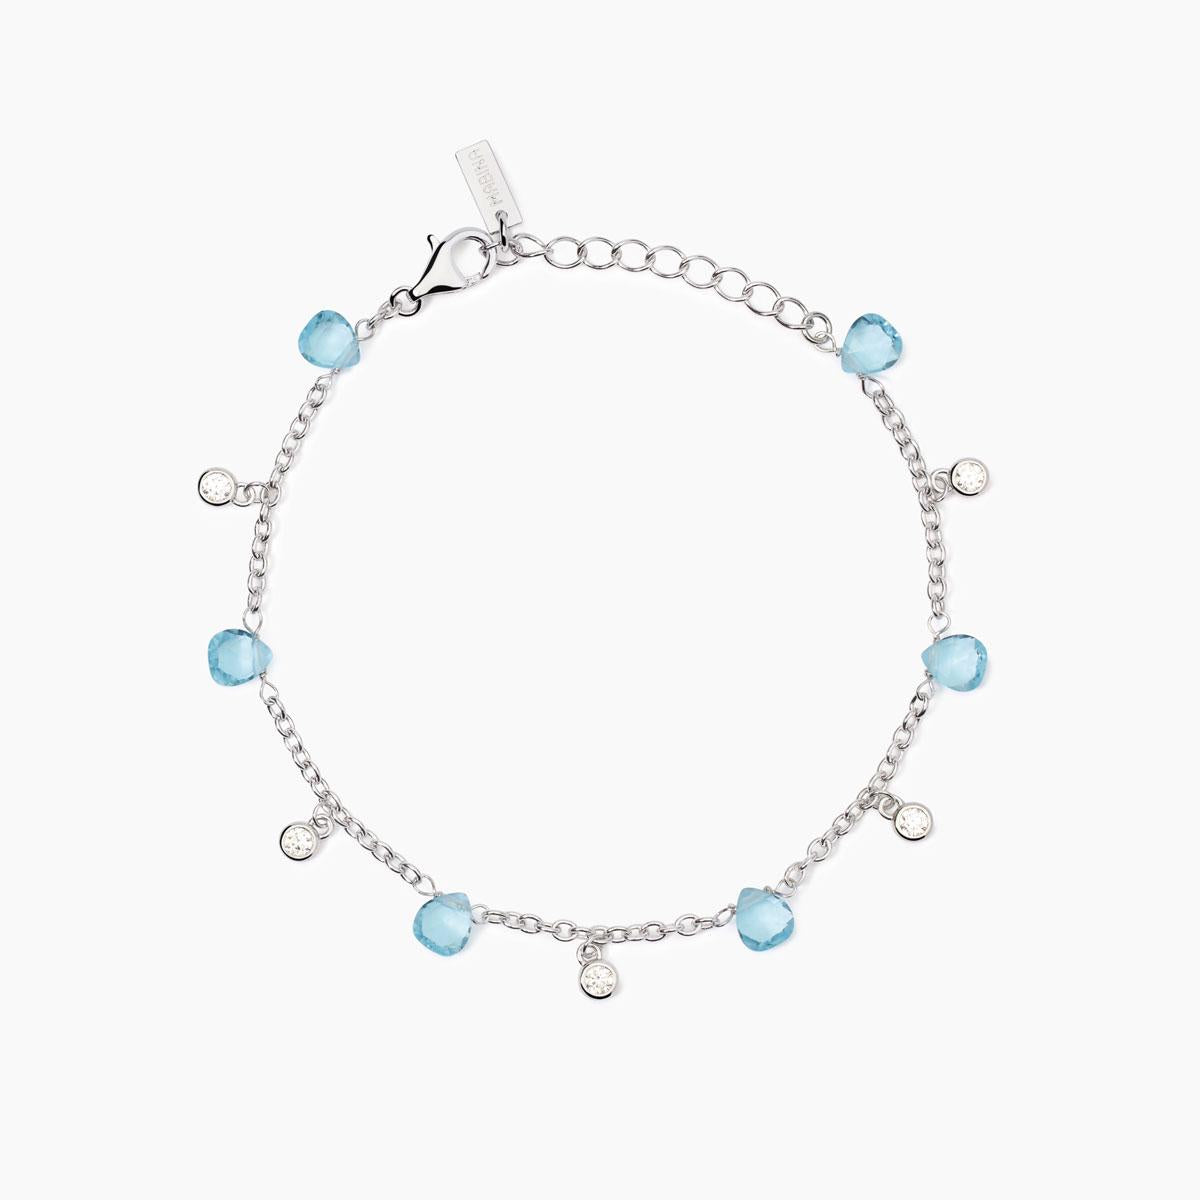 Mabina Donna - Bracciale con elementi in glass azzurro BEAUTY CODE - 533893